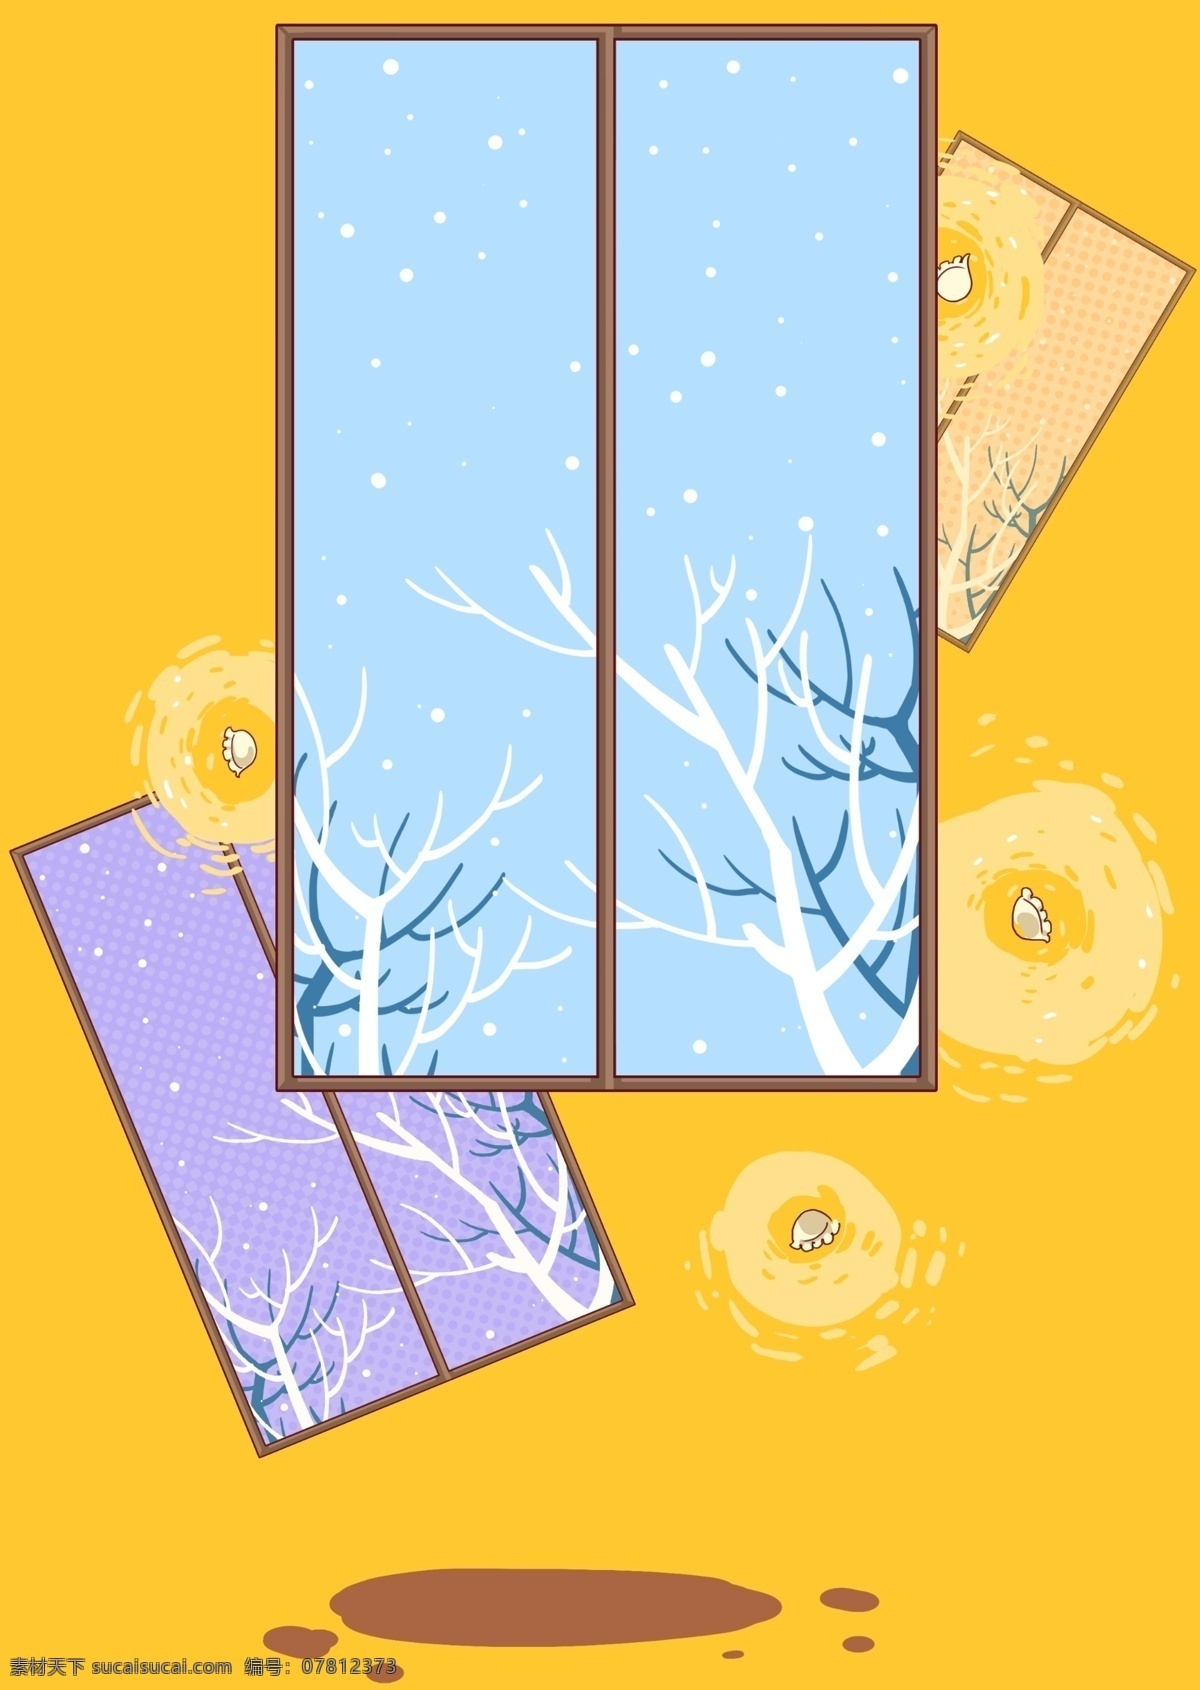 黄色 冬季 窗户 下雪 背景 冬季背景 冬天主题 花朵 广告背景 通用背景 背景展板图 背景图 创意